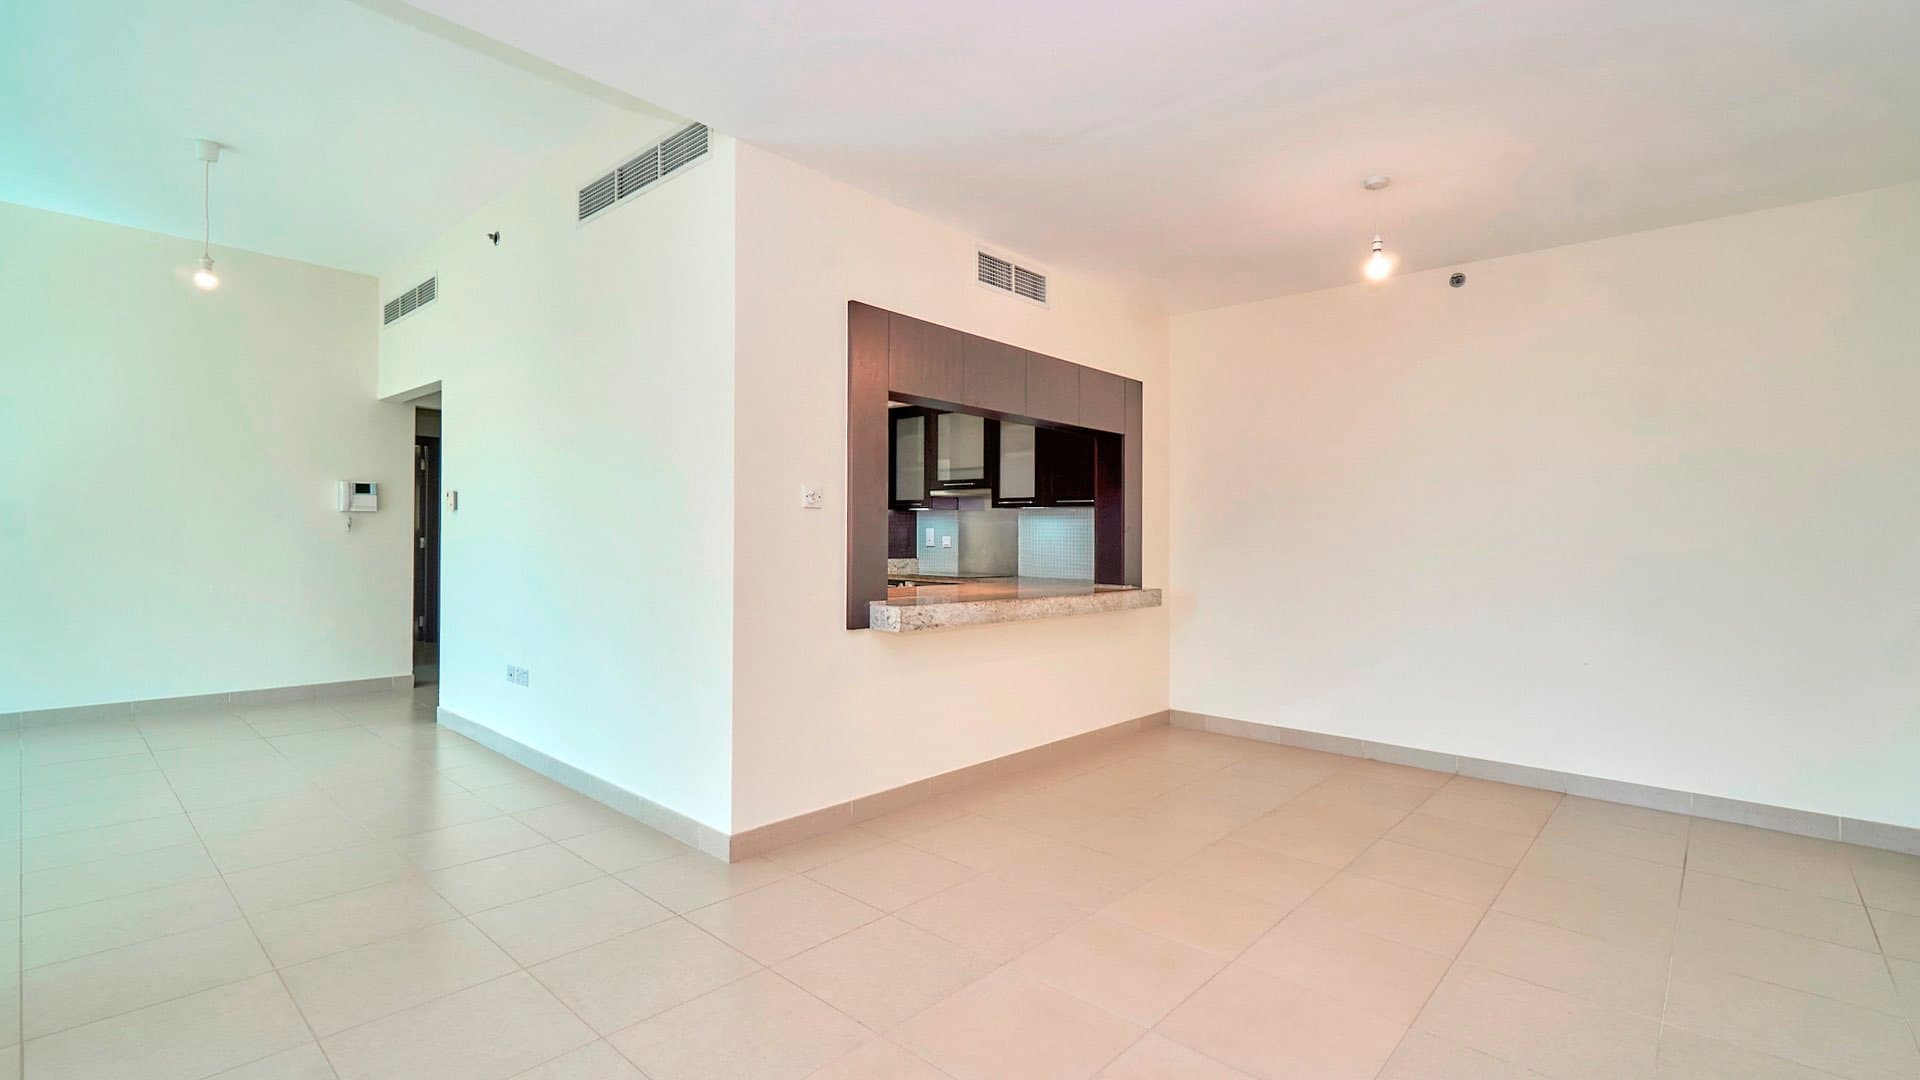 2 Bedroom Apartment For Rent Mosela Lp07266 261c8e7d32227e00.jpg